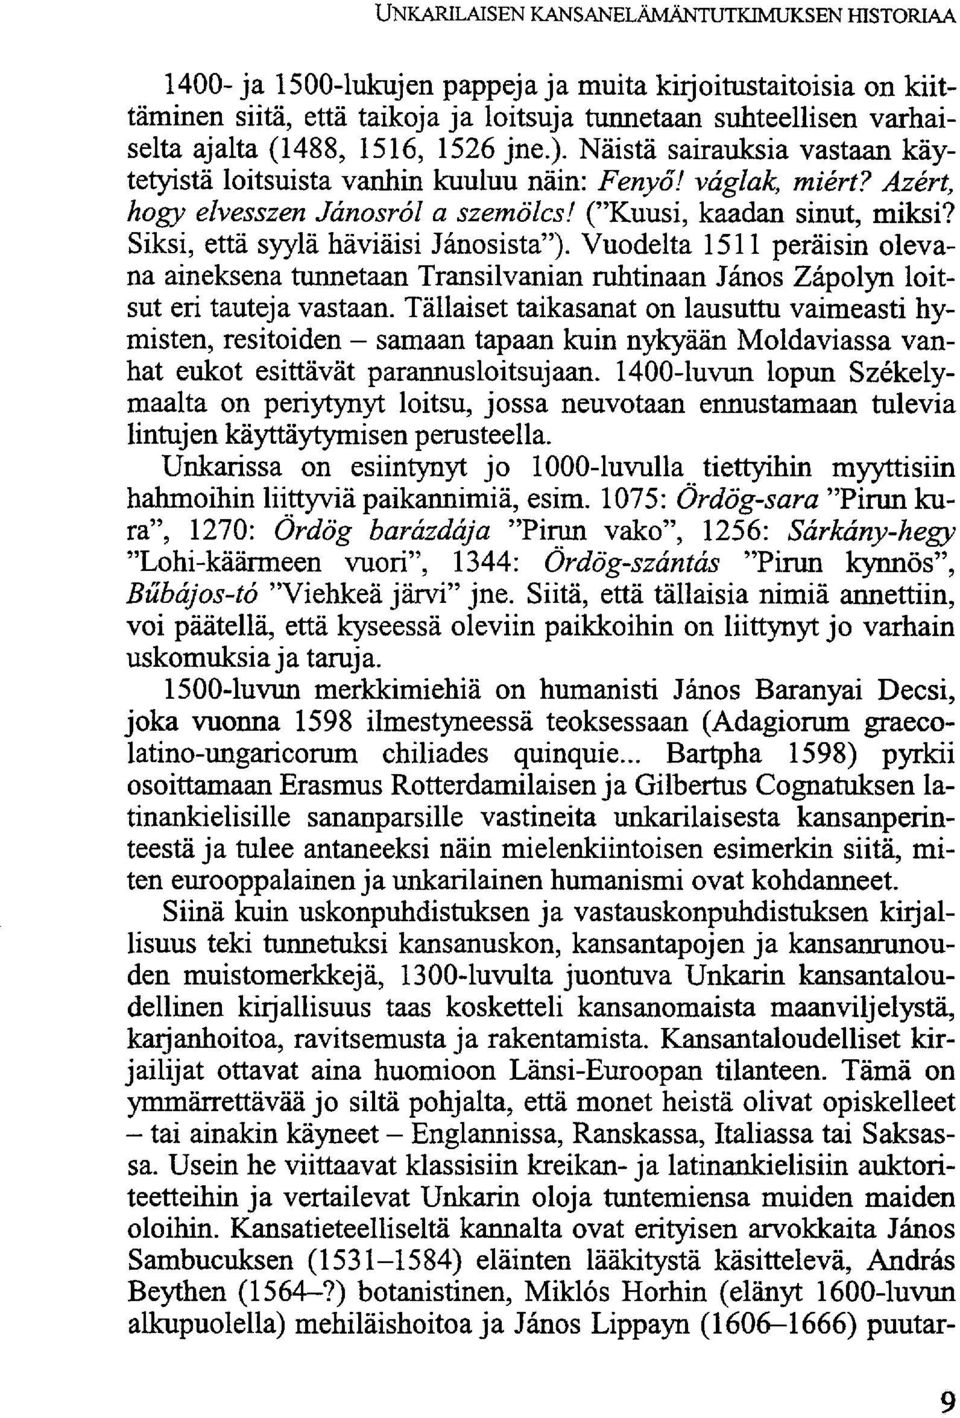 Siksi, että syylä häviäisi Janosista"). Vuodelta 1511 peräisin olevana aineksena tunnetaan Transilvanian ruhtinaan János Zápolyn loitsut eri tauteja vastaan.